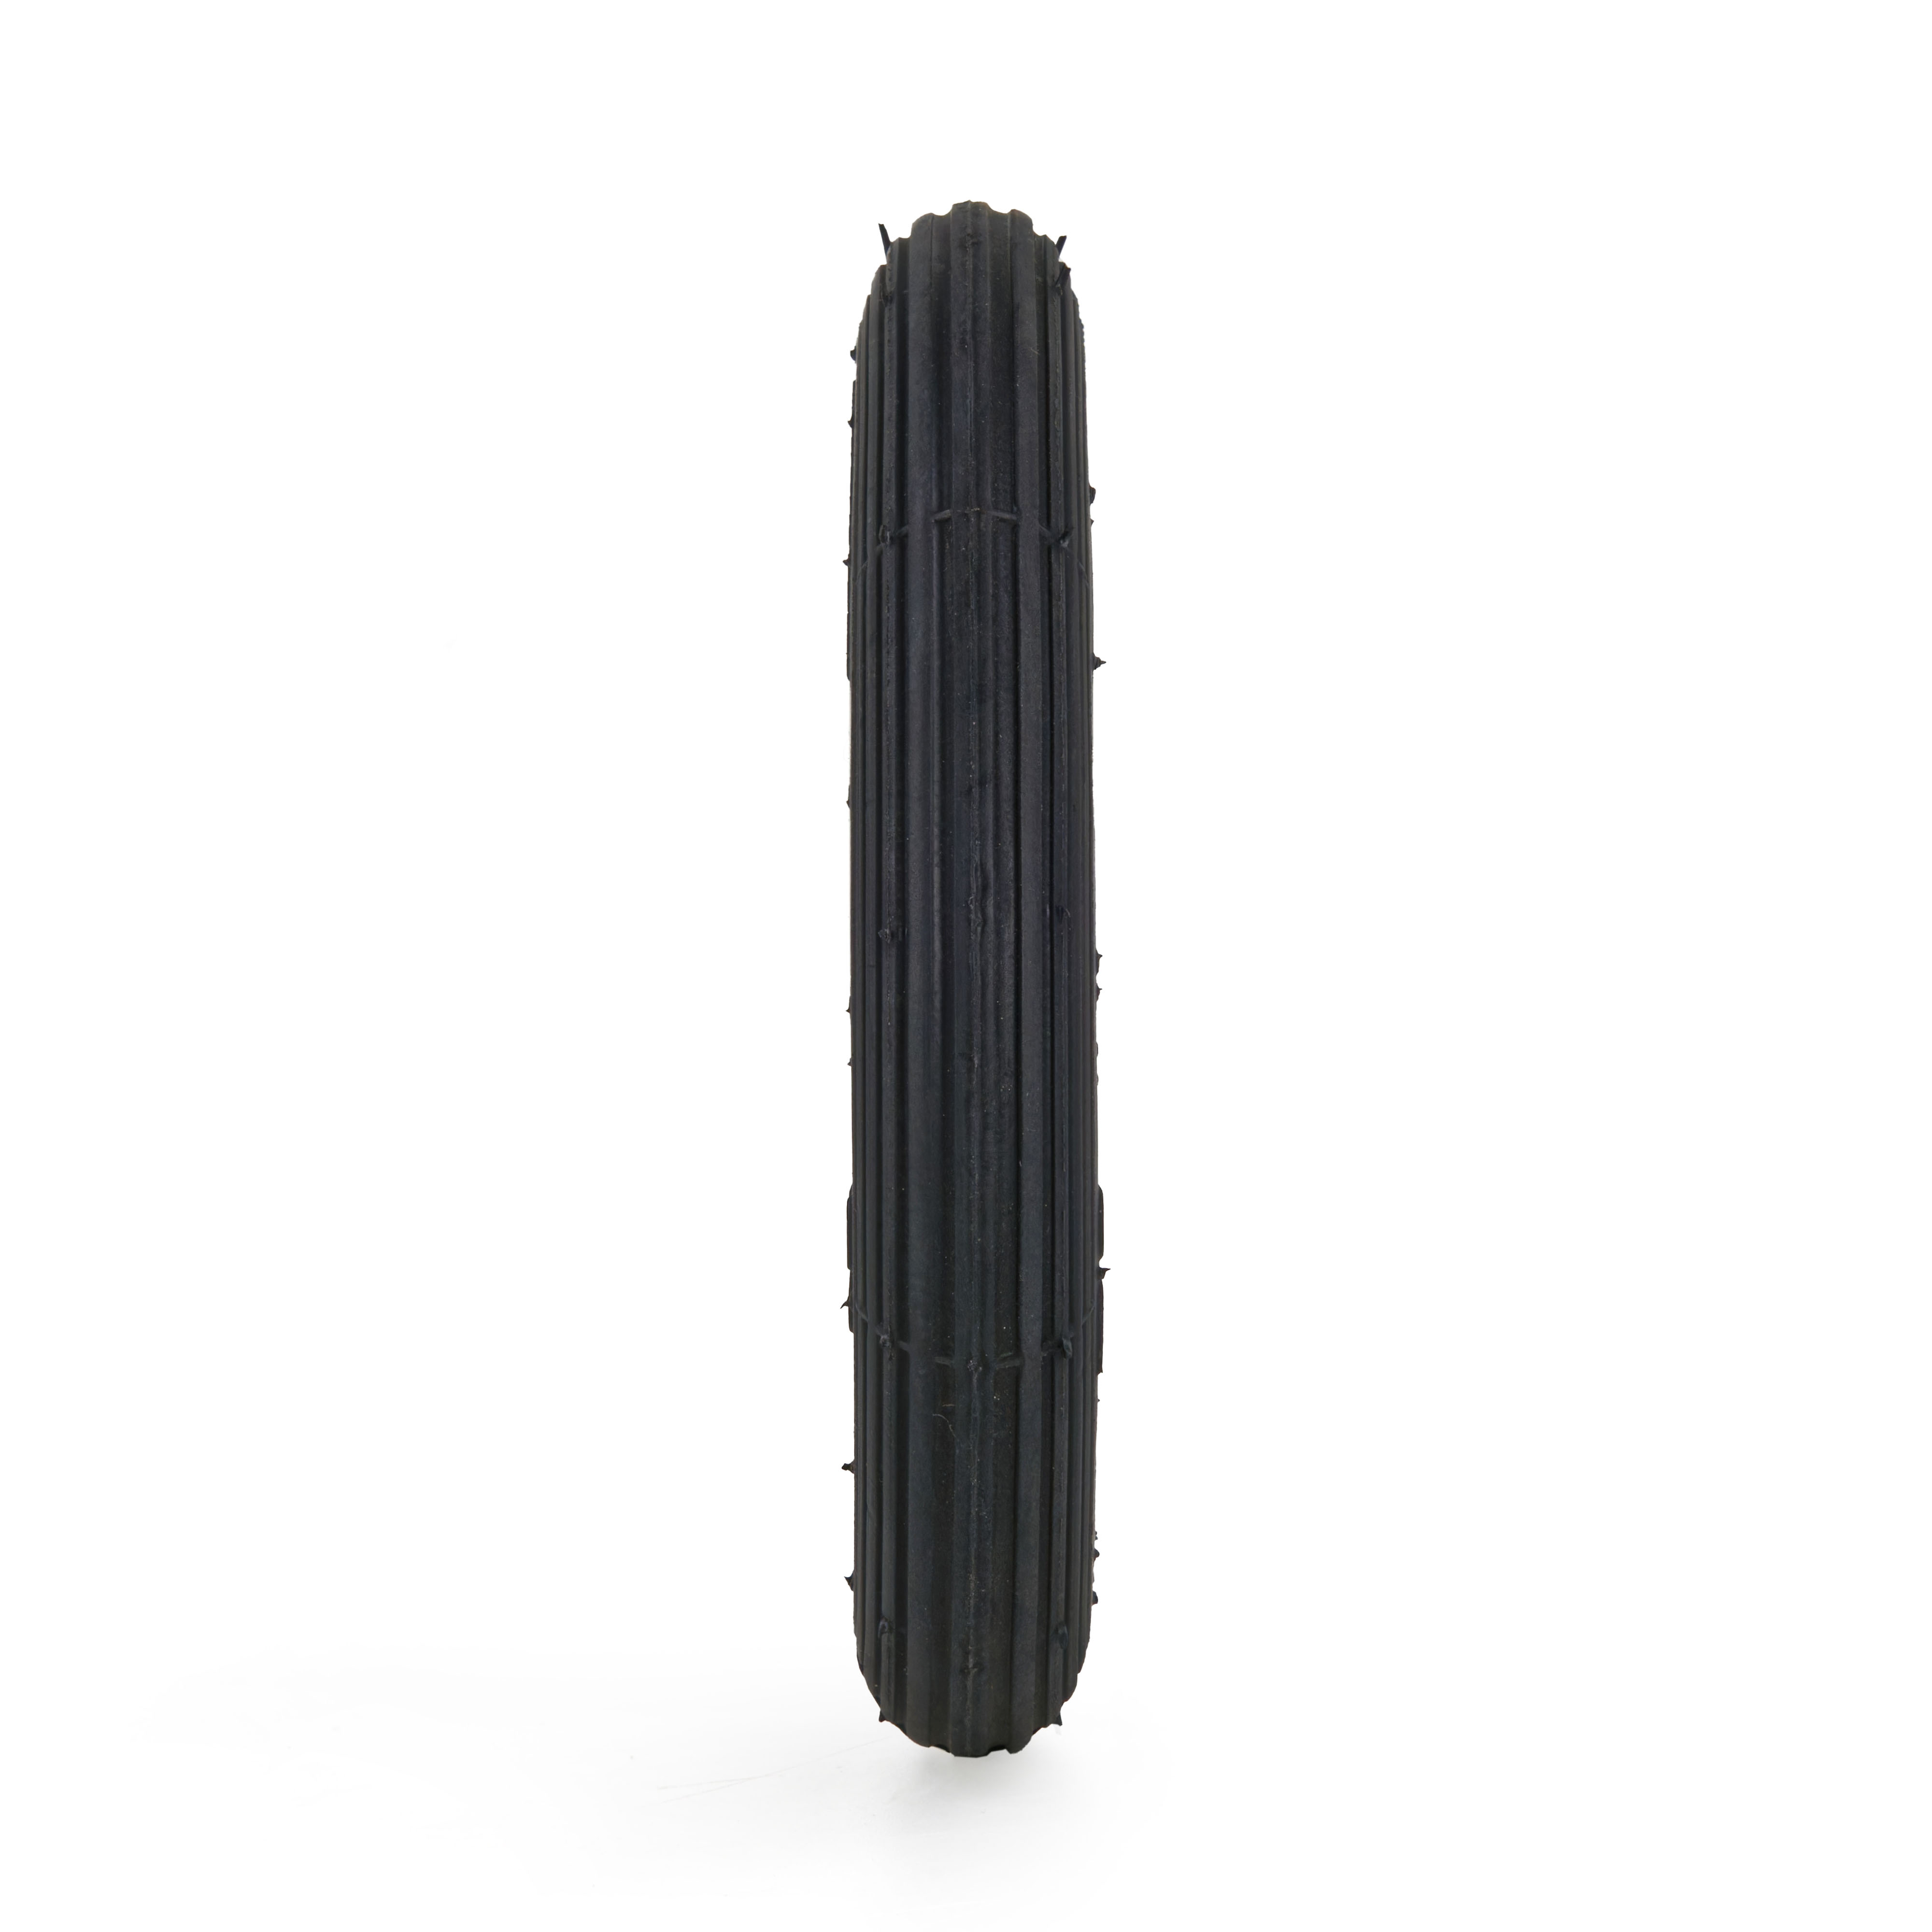 Reifen 6x1.1/4, 4PR, TT, Rolko R-103, schwarz - Profilansicht